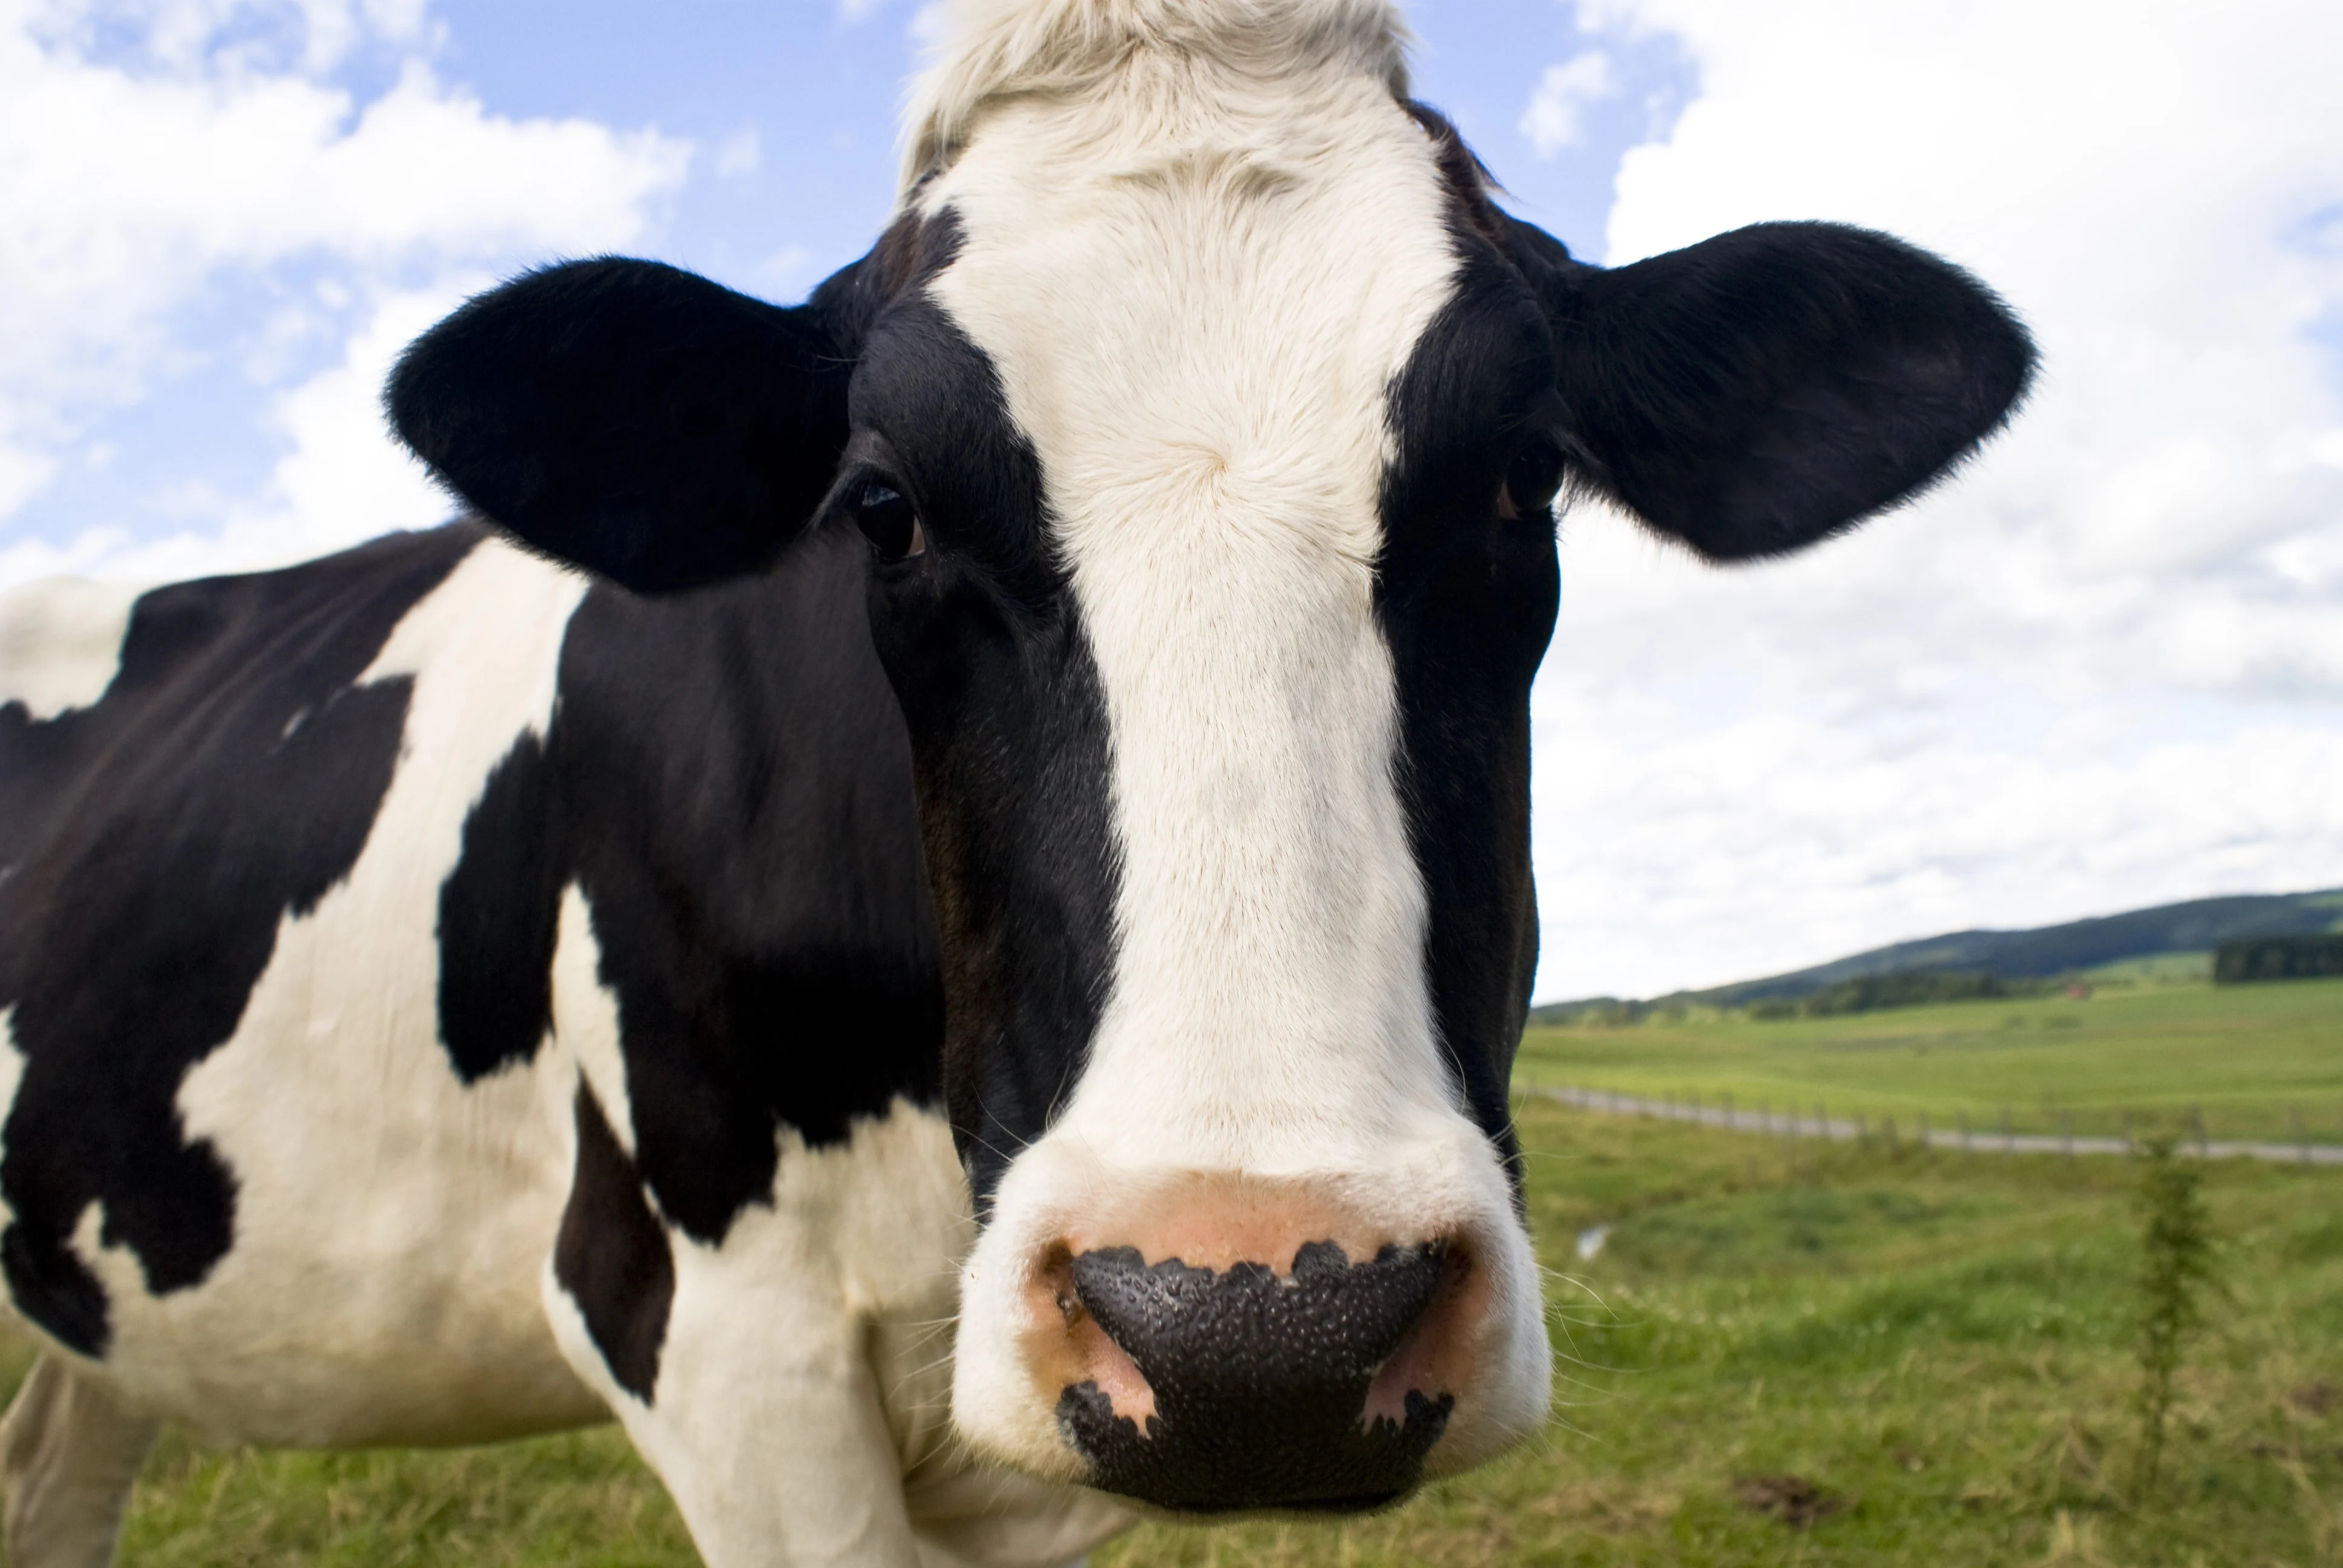 Hoe gemaak as jou koei plastiek gevreet het?